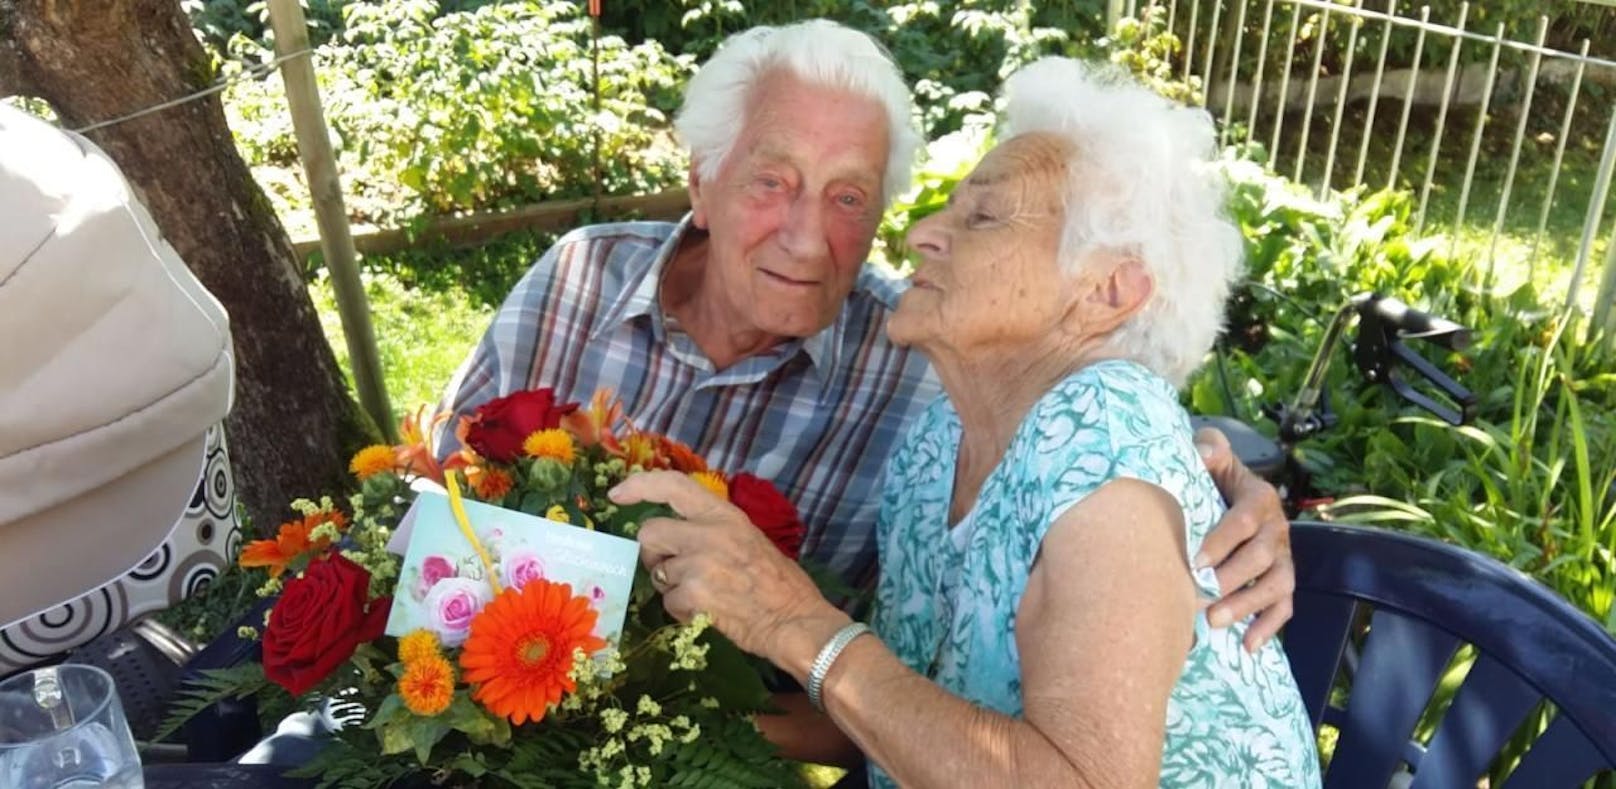 Gesetz trennte Paar nach 65 Jahren, jetzt Happy-End